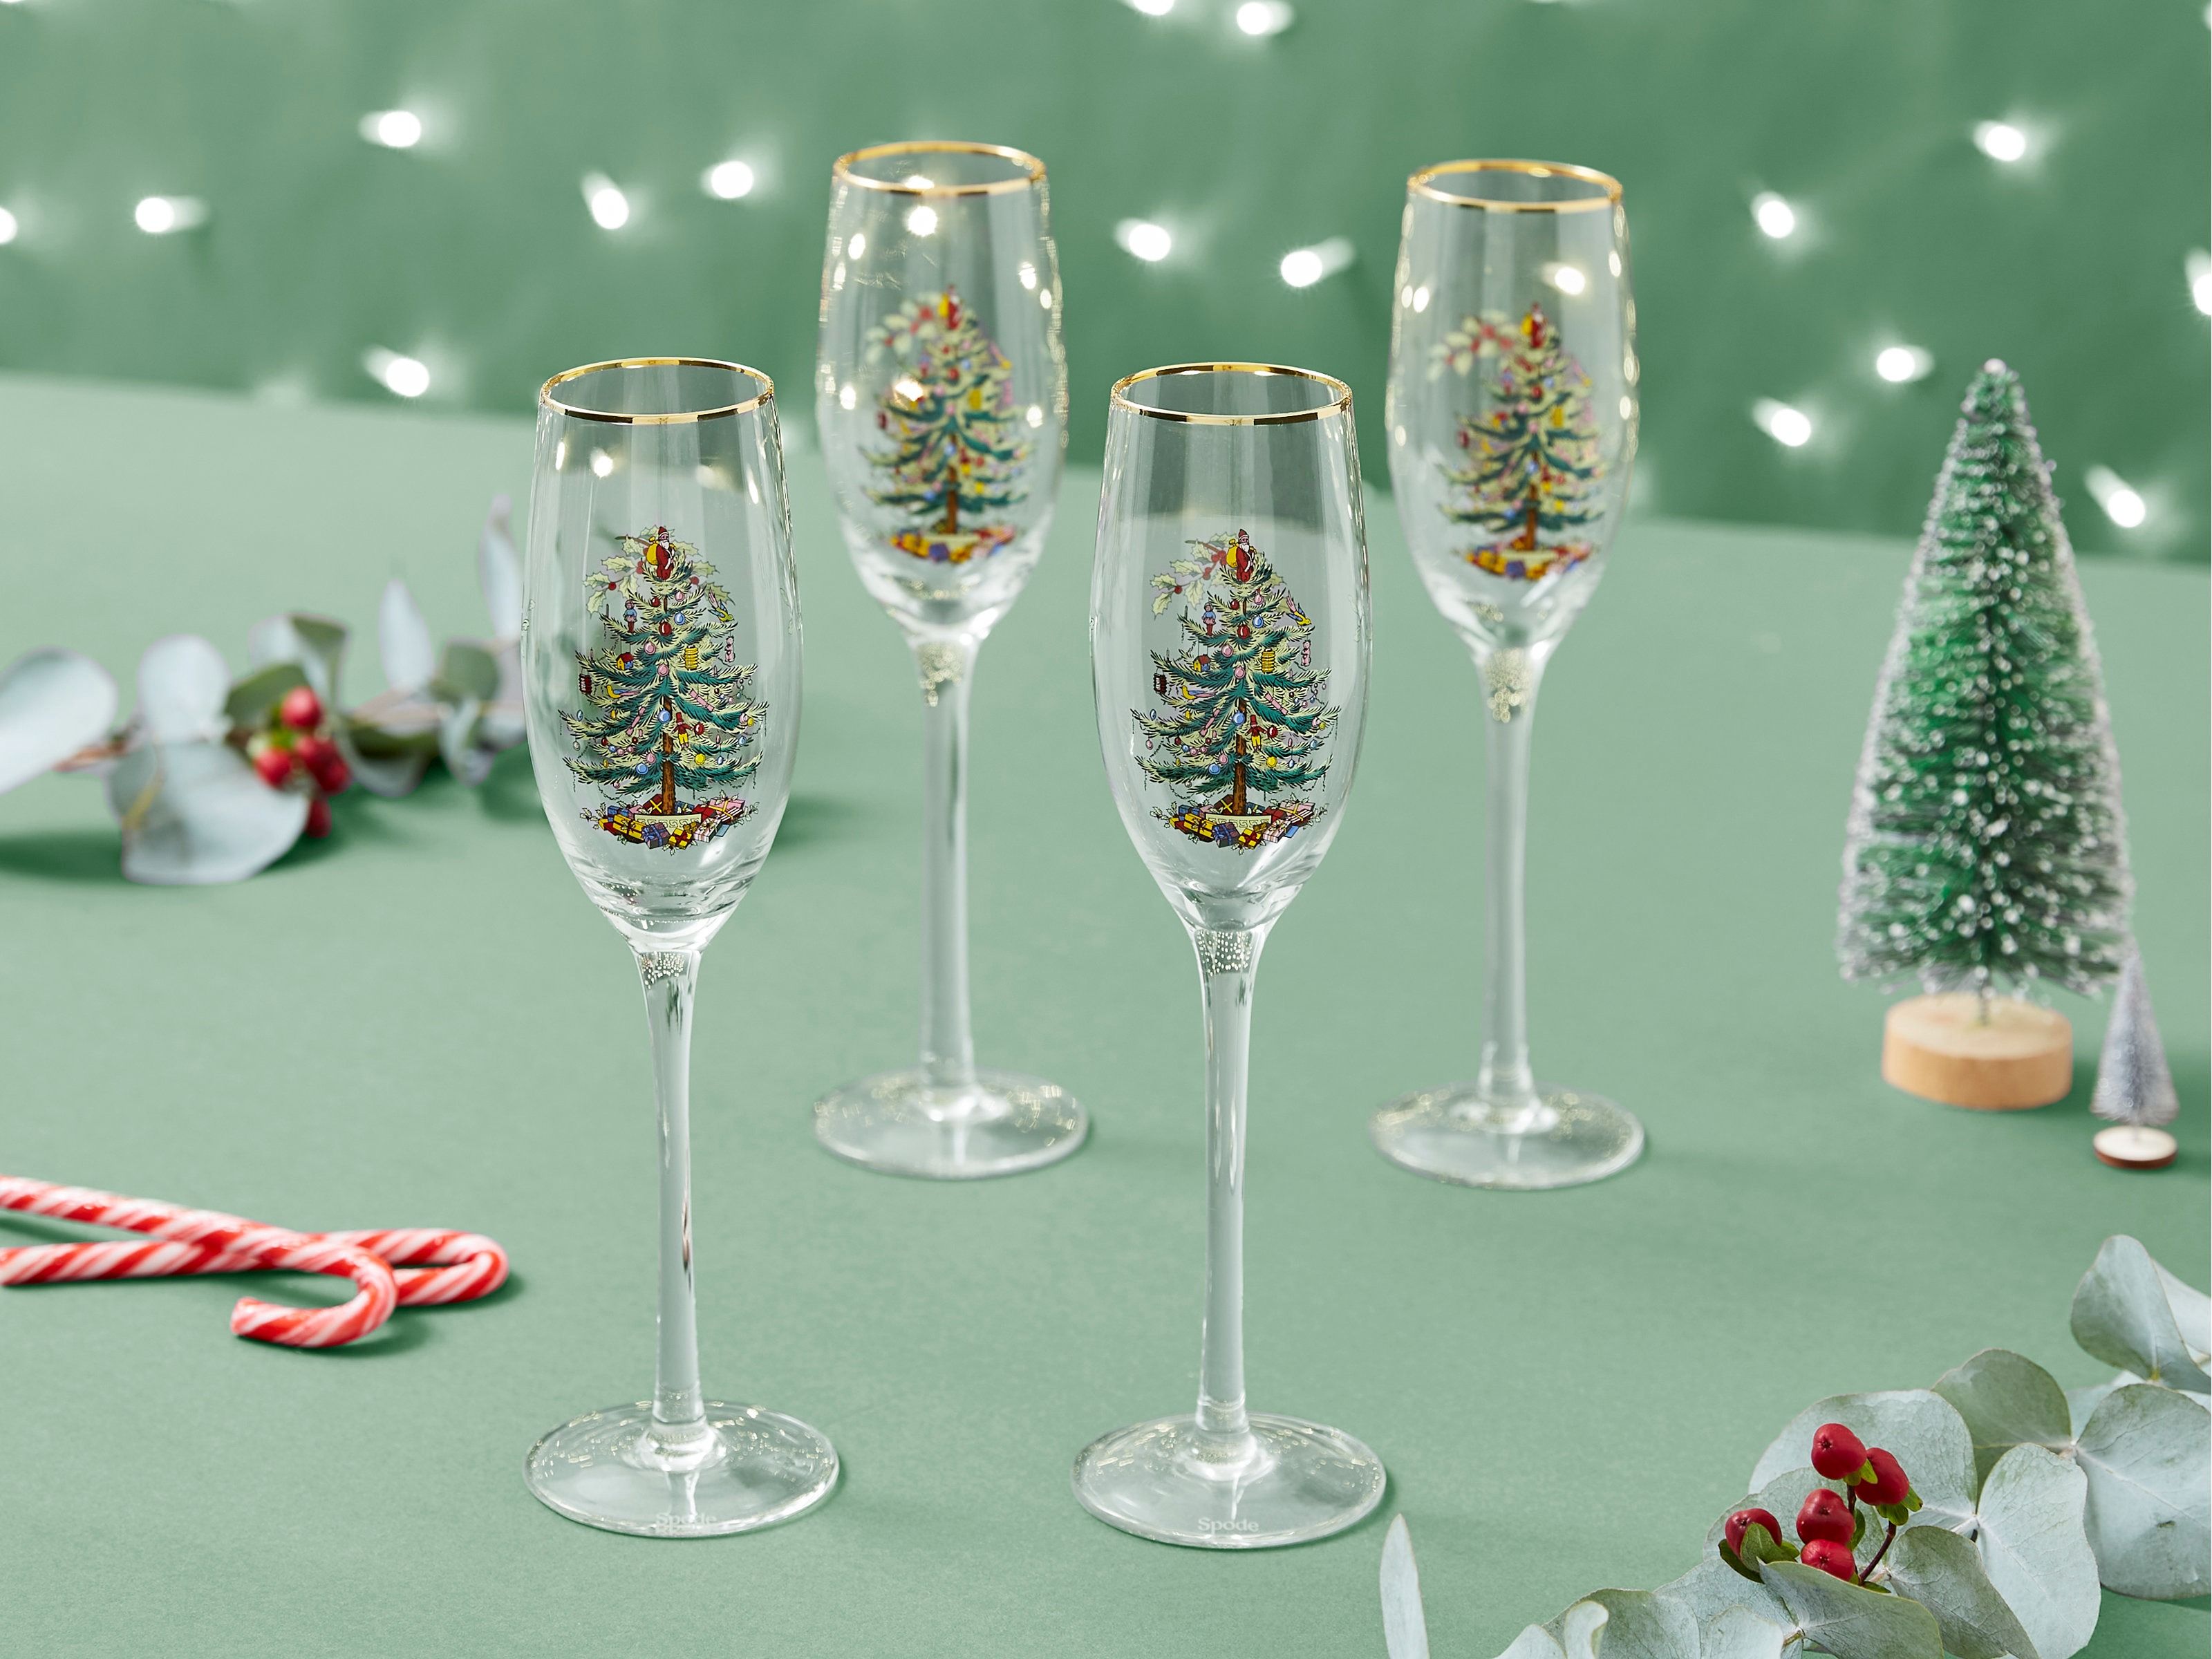 https://hips.hearstapps.com/hmg-prod/images/christmas-wine-glasses-656623bbad09d.jpg